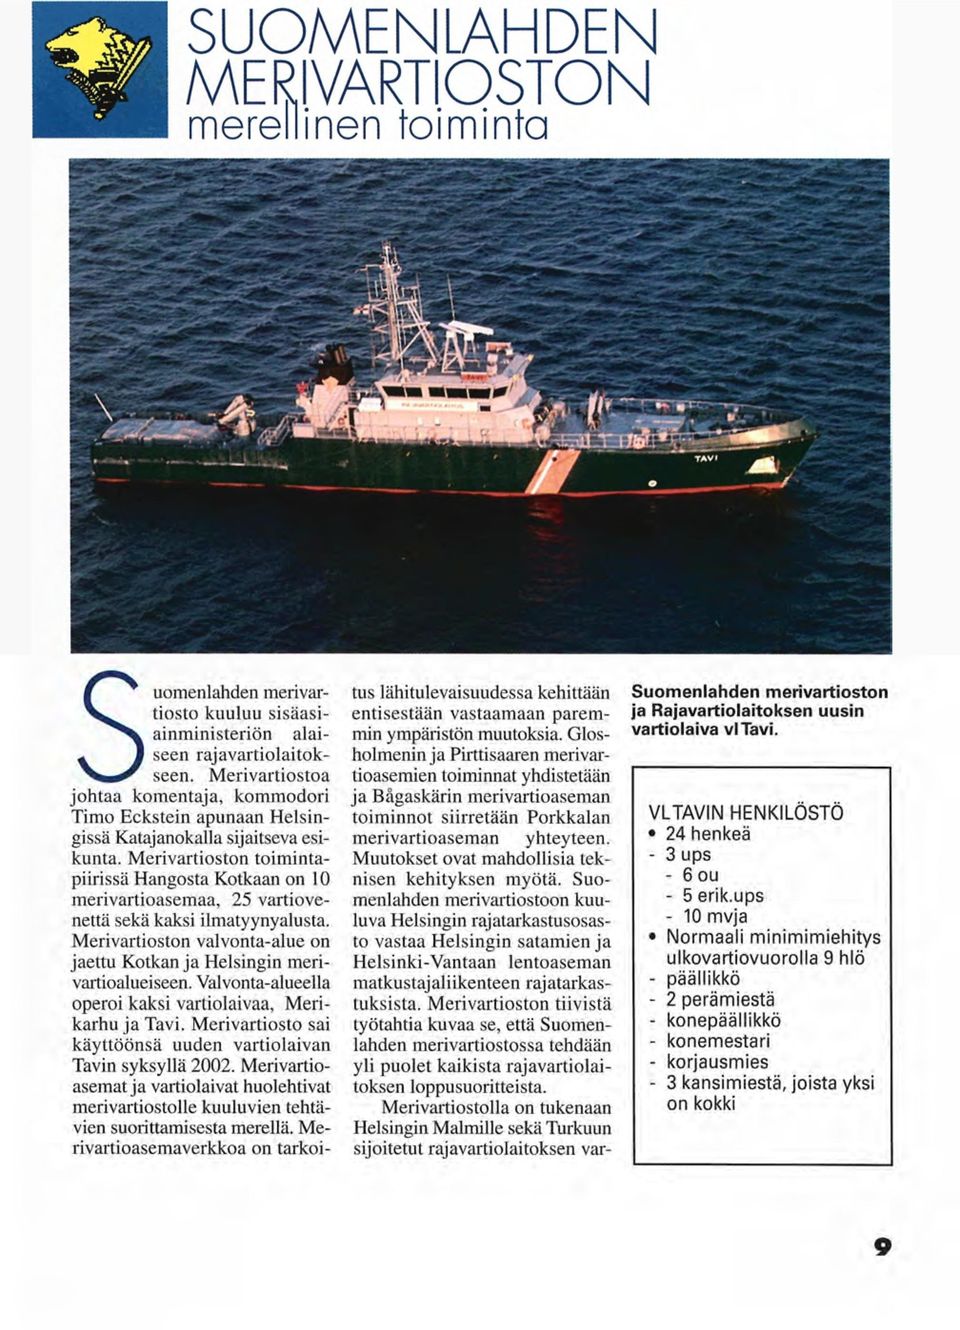 Valvonta-alueella operoi kaksi vartiolaivaa, Merikarhu ja Tavi. Merivartiosto sai käyttöönsä uuden vartiolaivan Tavin syksyllä 2002.